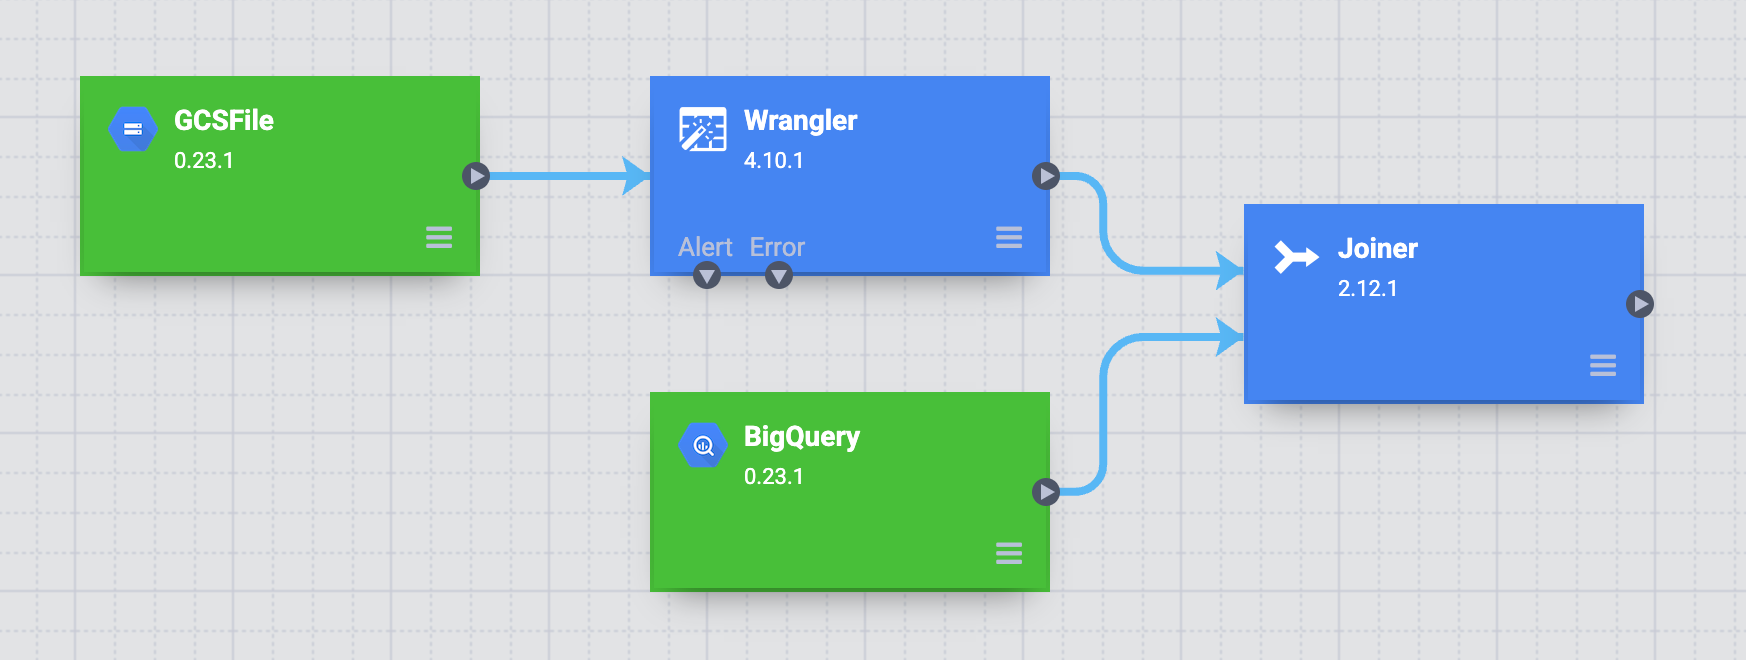 Menggabungkan node Wrangler dan BigQuery ke node Joiner